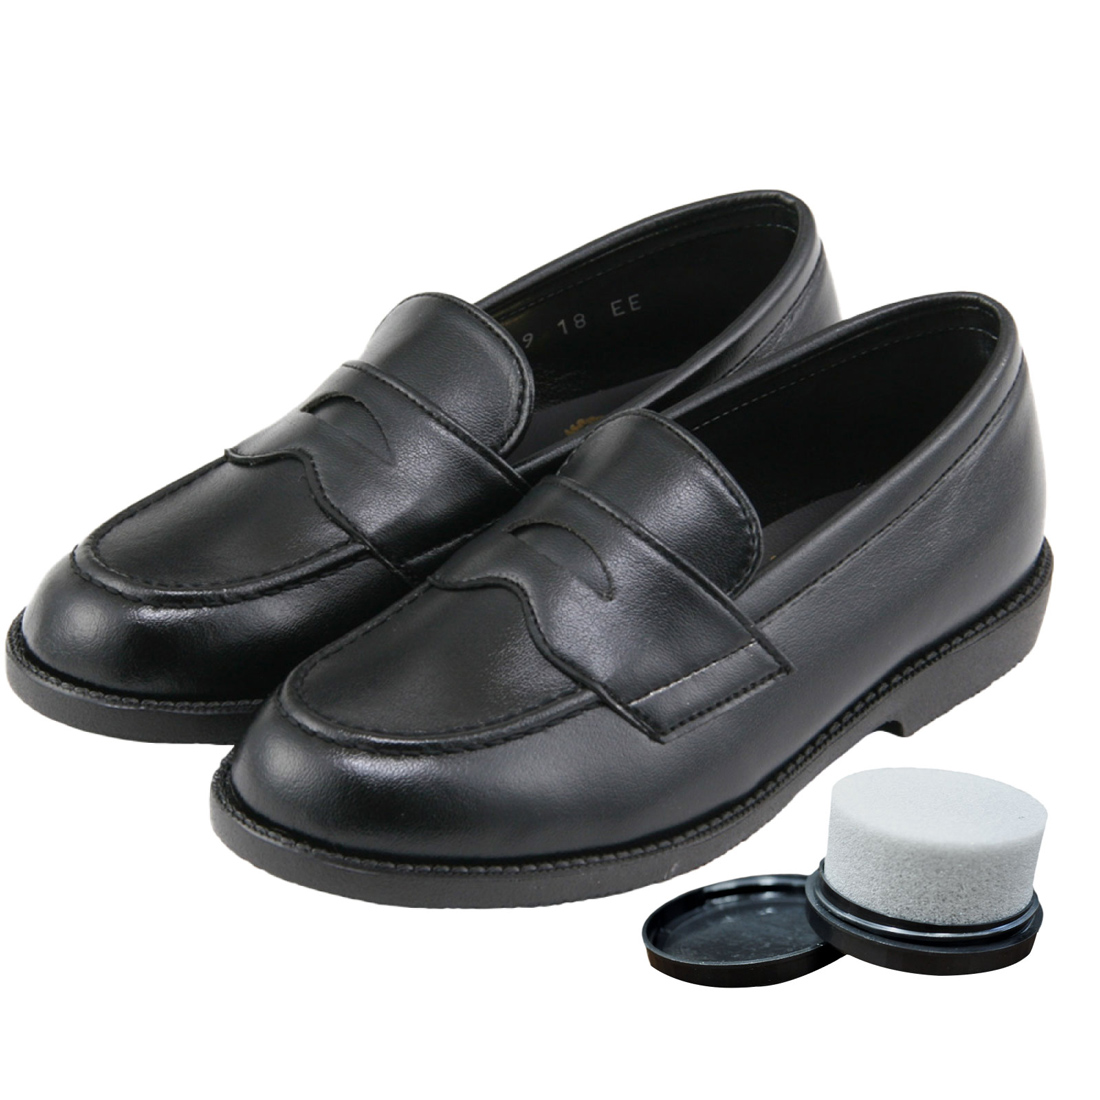 靴磨き付き KID CORE キッドコア クラリーノ 2E 日本製ポリウレタン合皮製 ソフトタイプ ローファー 靴ズレしにくい靴 2E ブラック  21.5cm～24.0cm 1～3営業日以内に発送となります。 kc2089